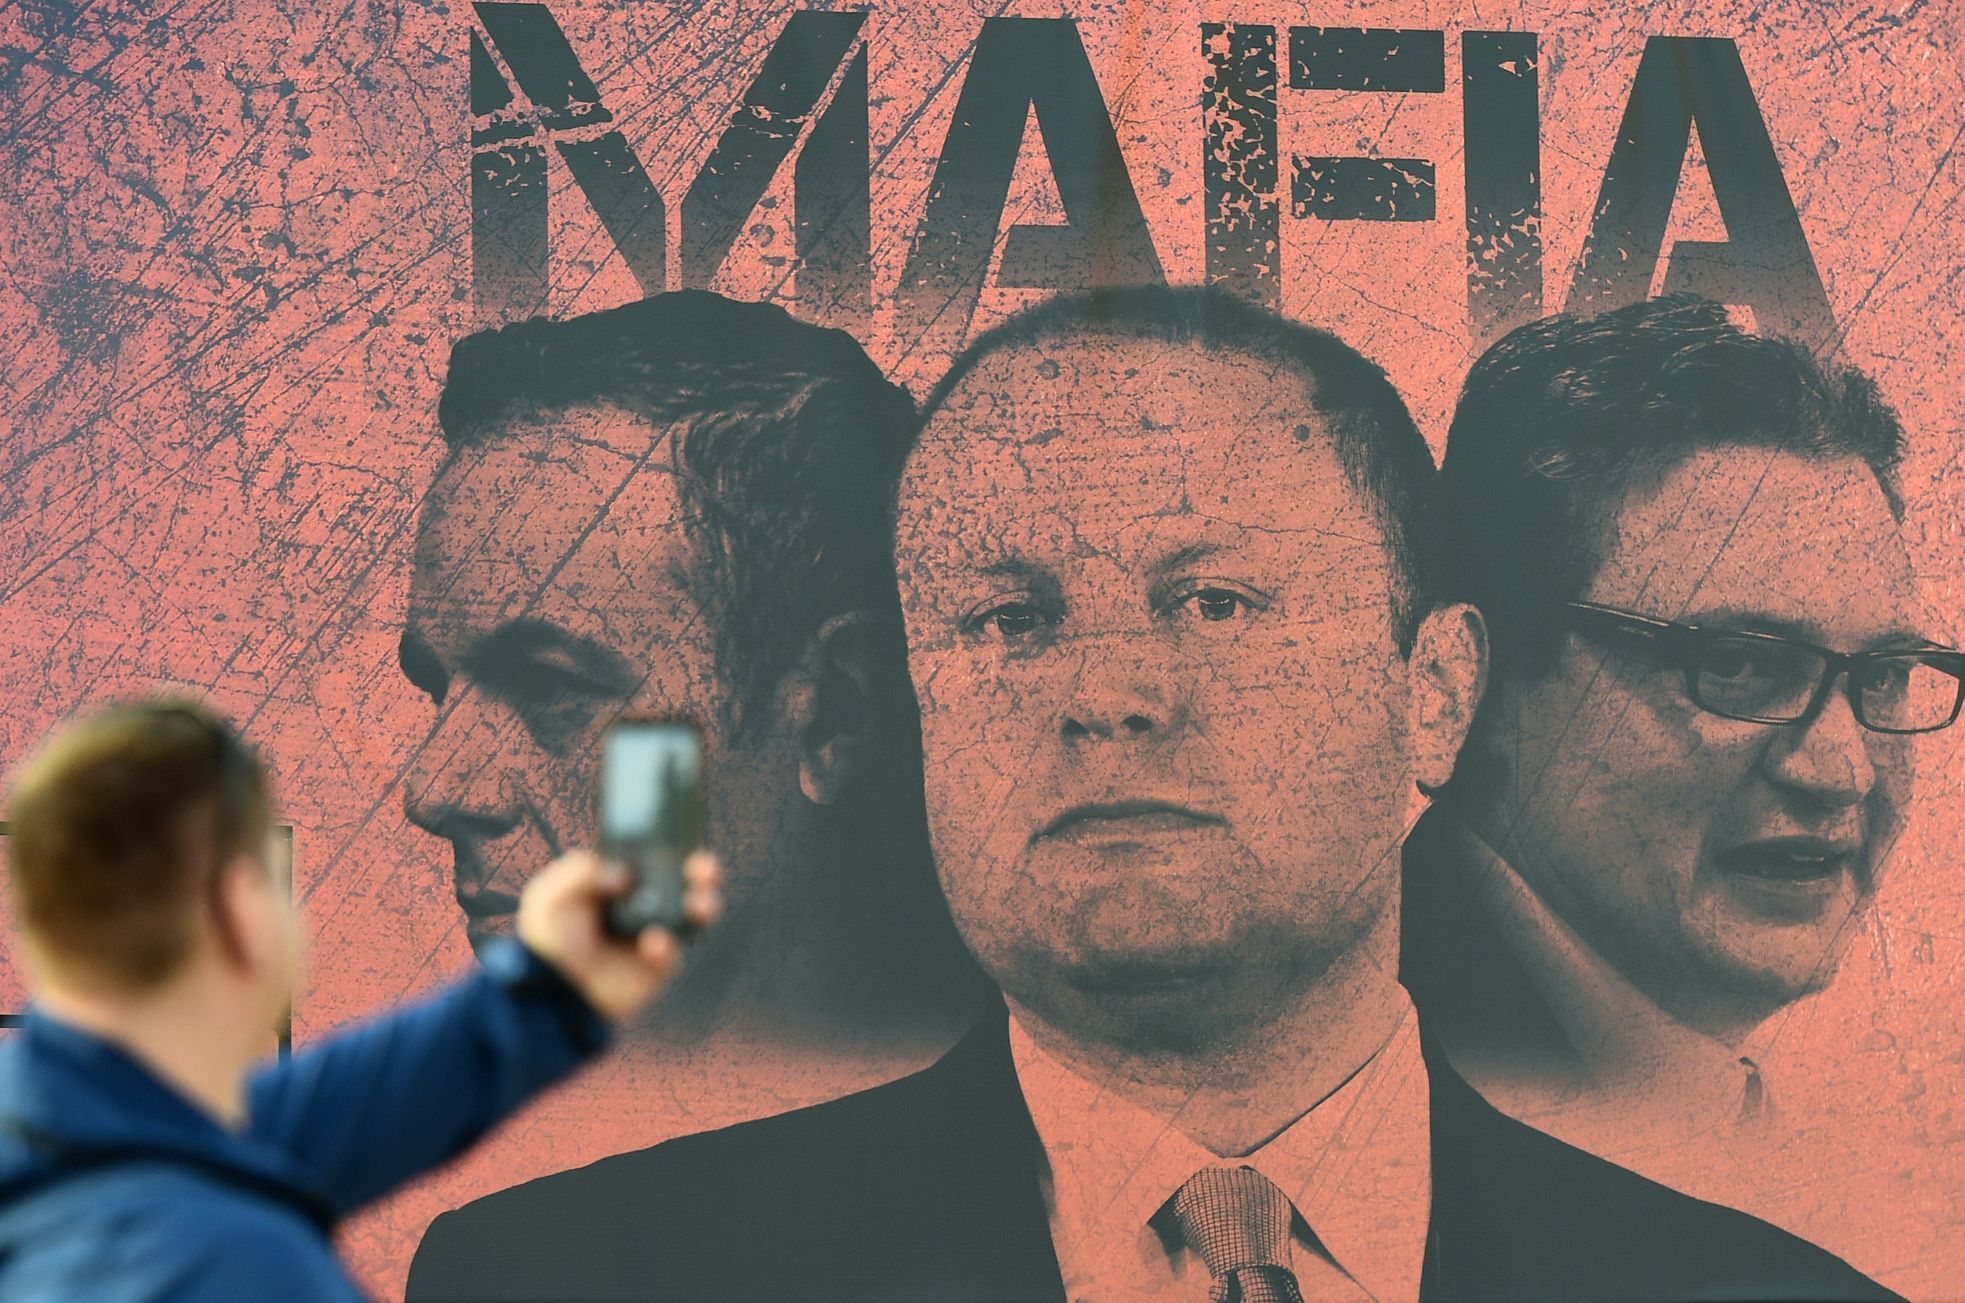 Muž fotografuje plakát, zobrazující maltského premiéra Josepha Muscata a jeho dva ministry jako mafii.